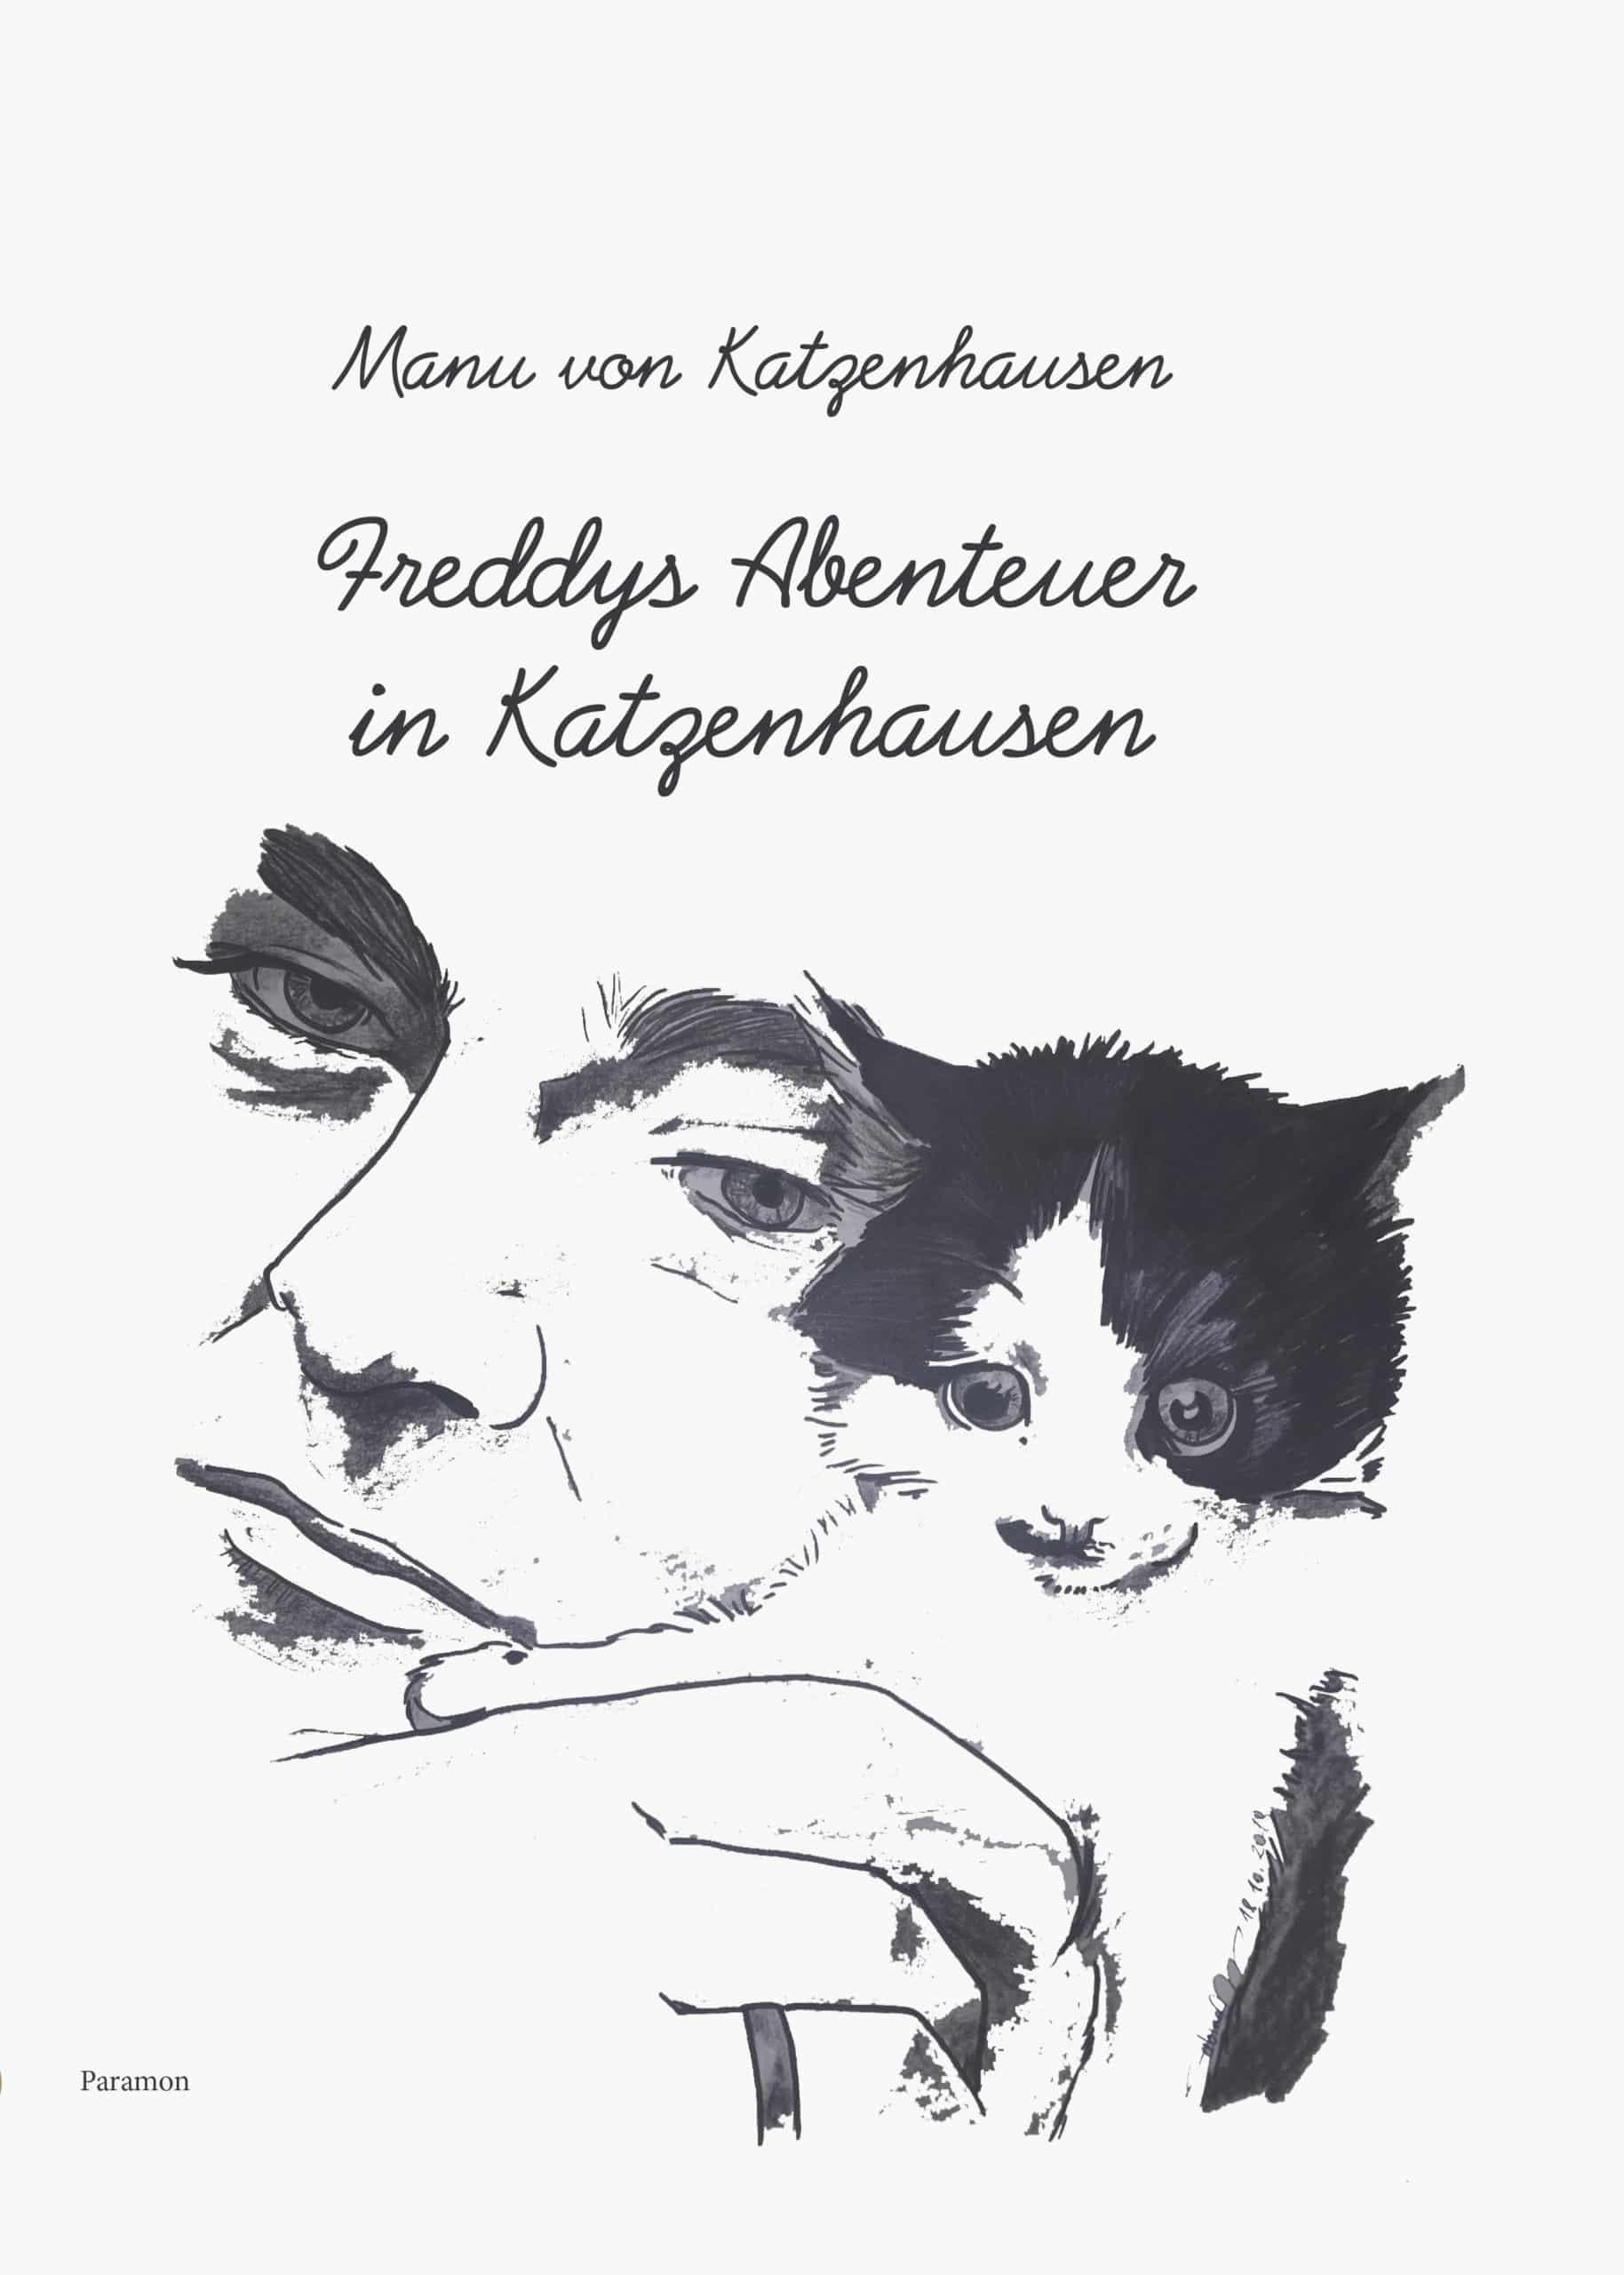 von Katzenhausen